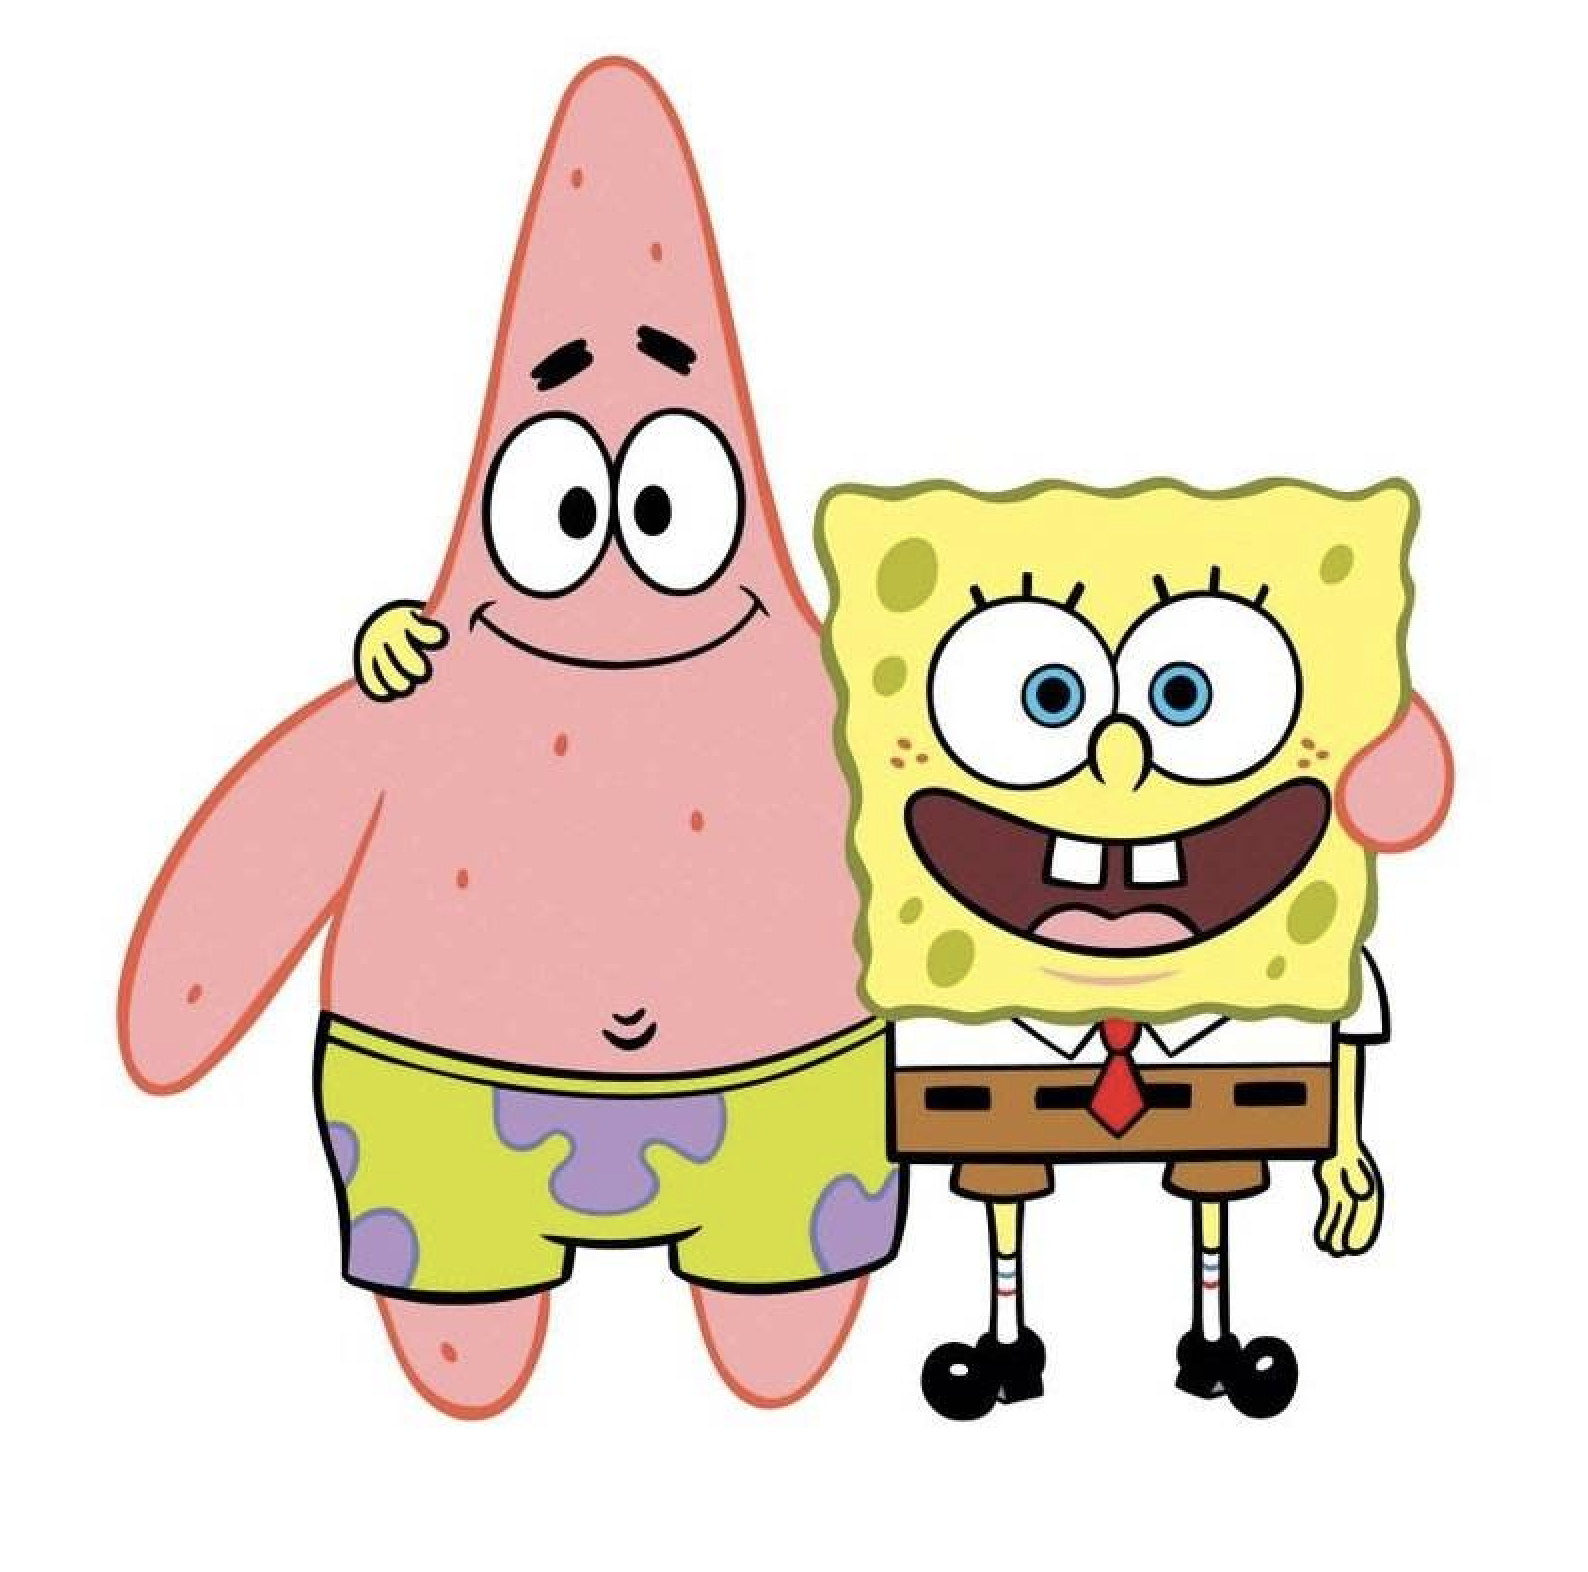 Patrick & Spongebob | Diamond Painting